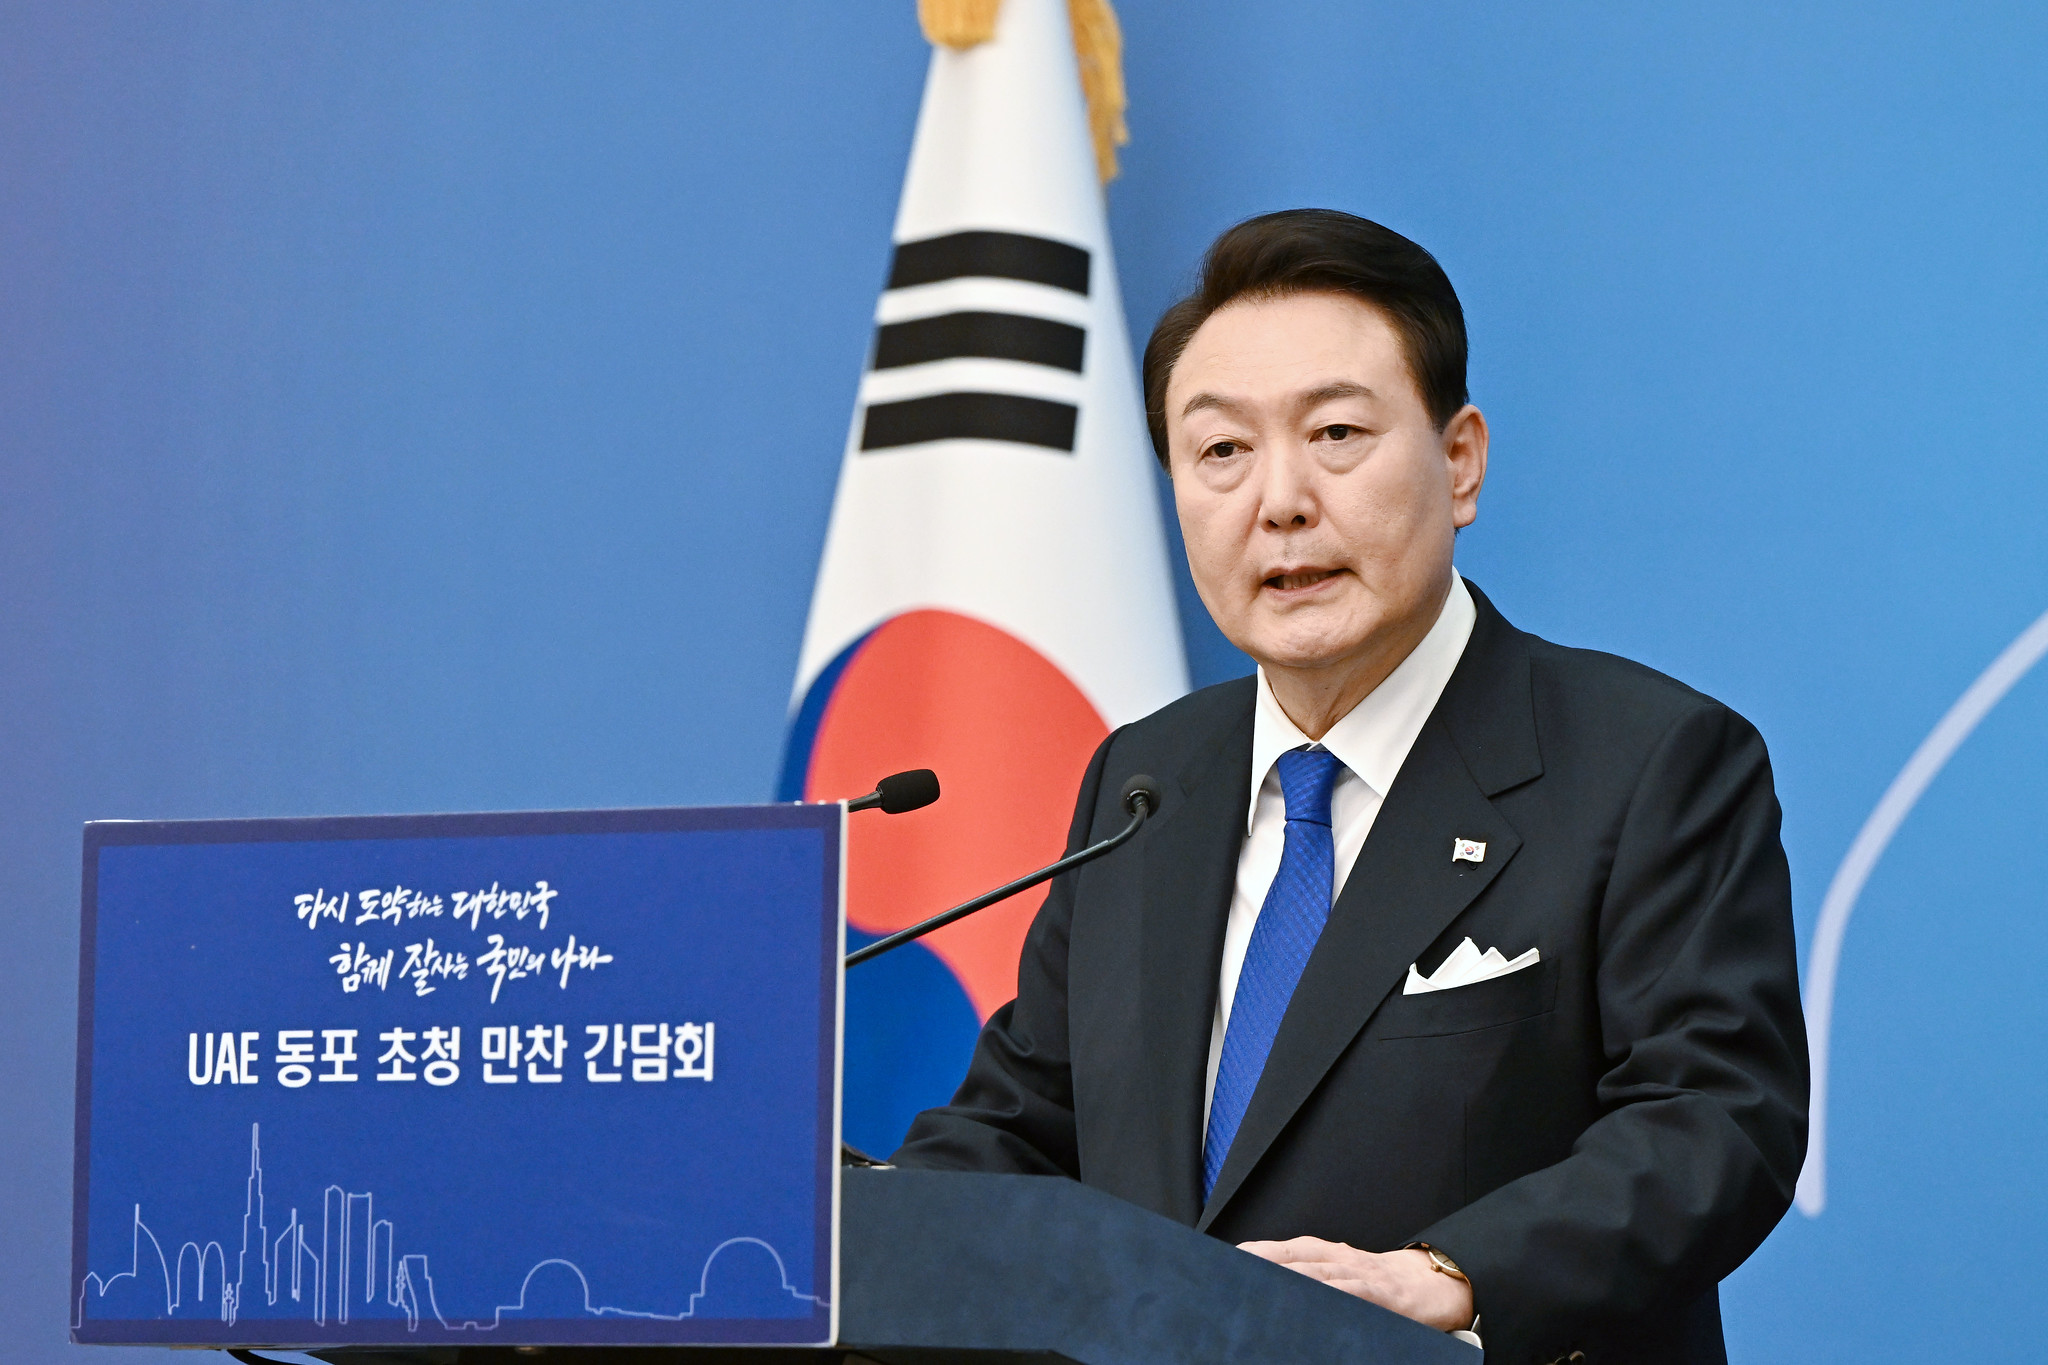 尹錫悅政府正不失時機地試圖收回上屆文在寅的共同民主黨政府通過的微薄改革。// 圖片來源： Republic of Korea, Flickr